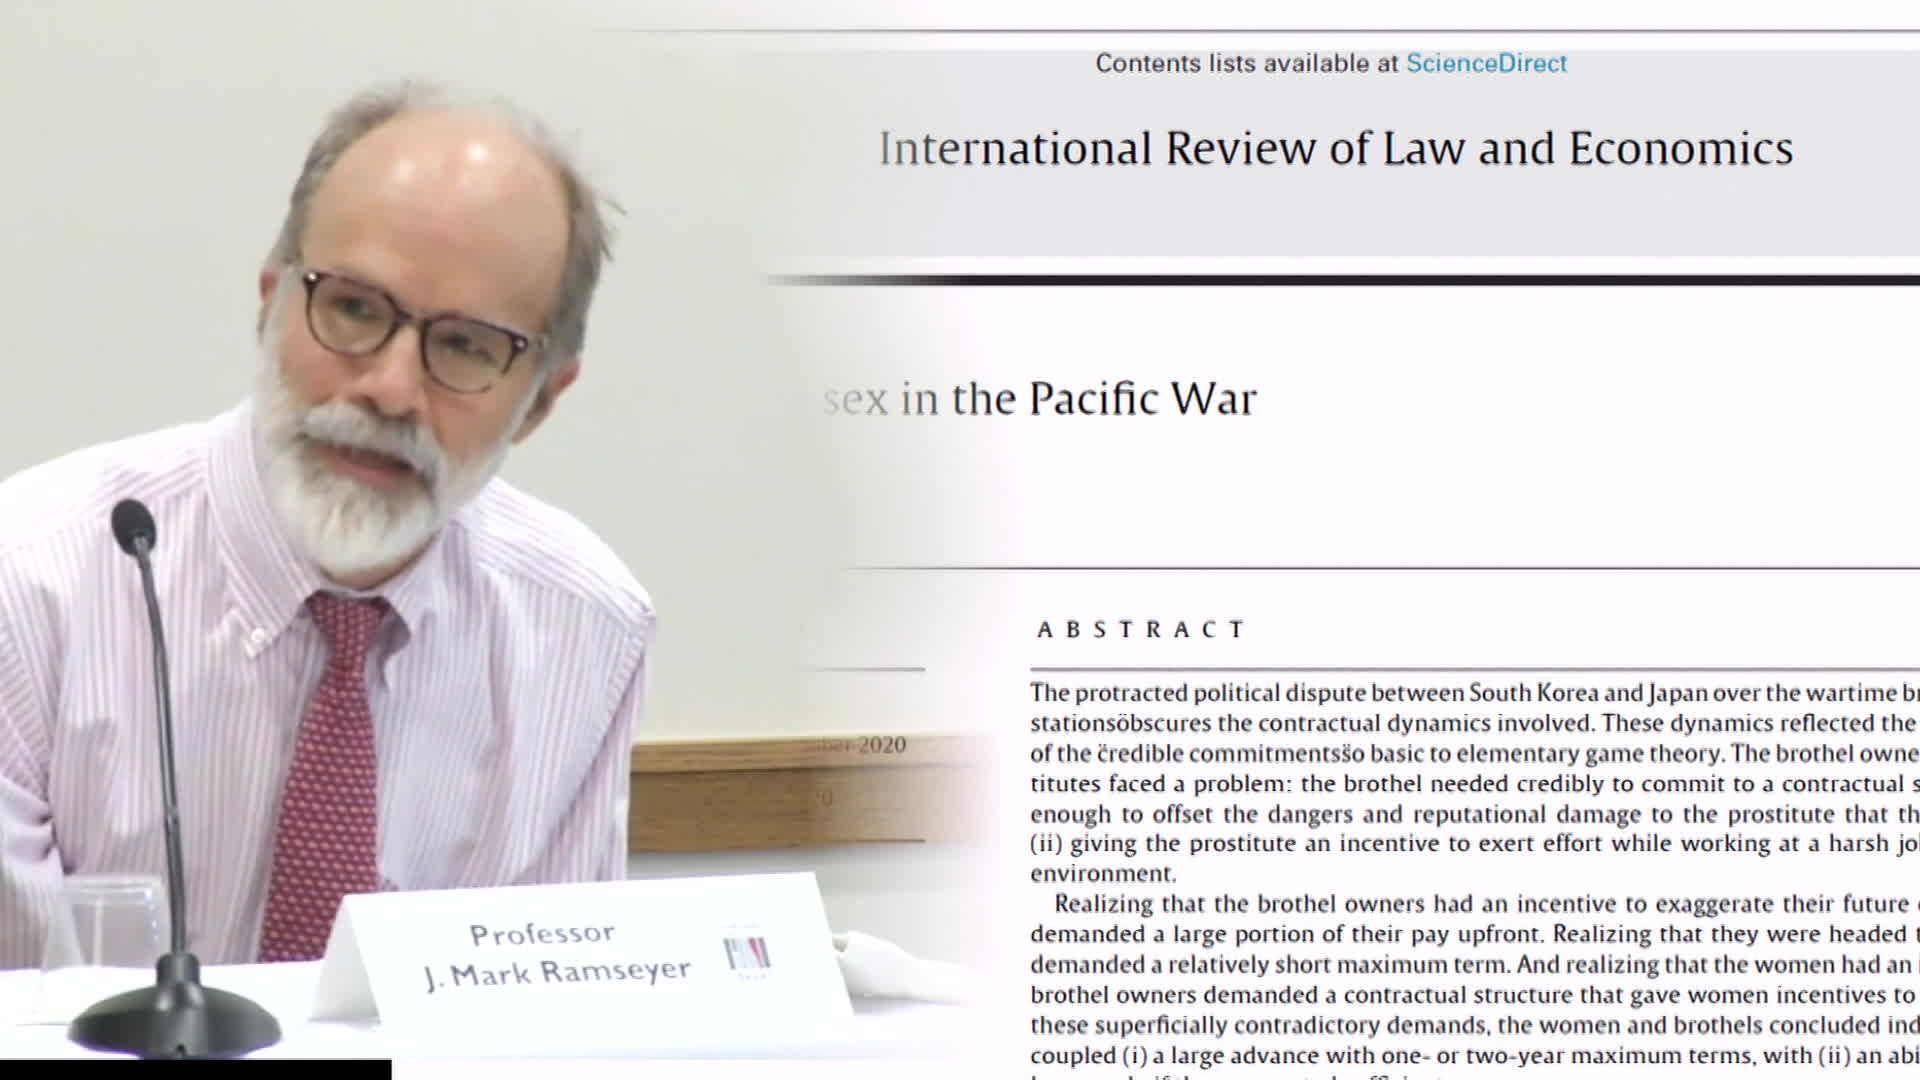 마크 램지어 하버드대 교수와 그의 논문 ‘태평양 전쟁에서의 성계약’